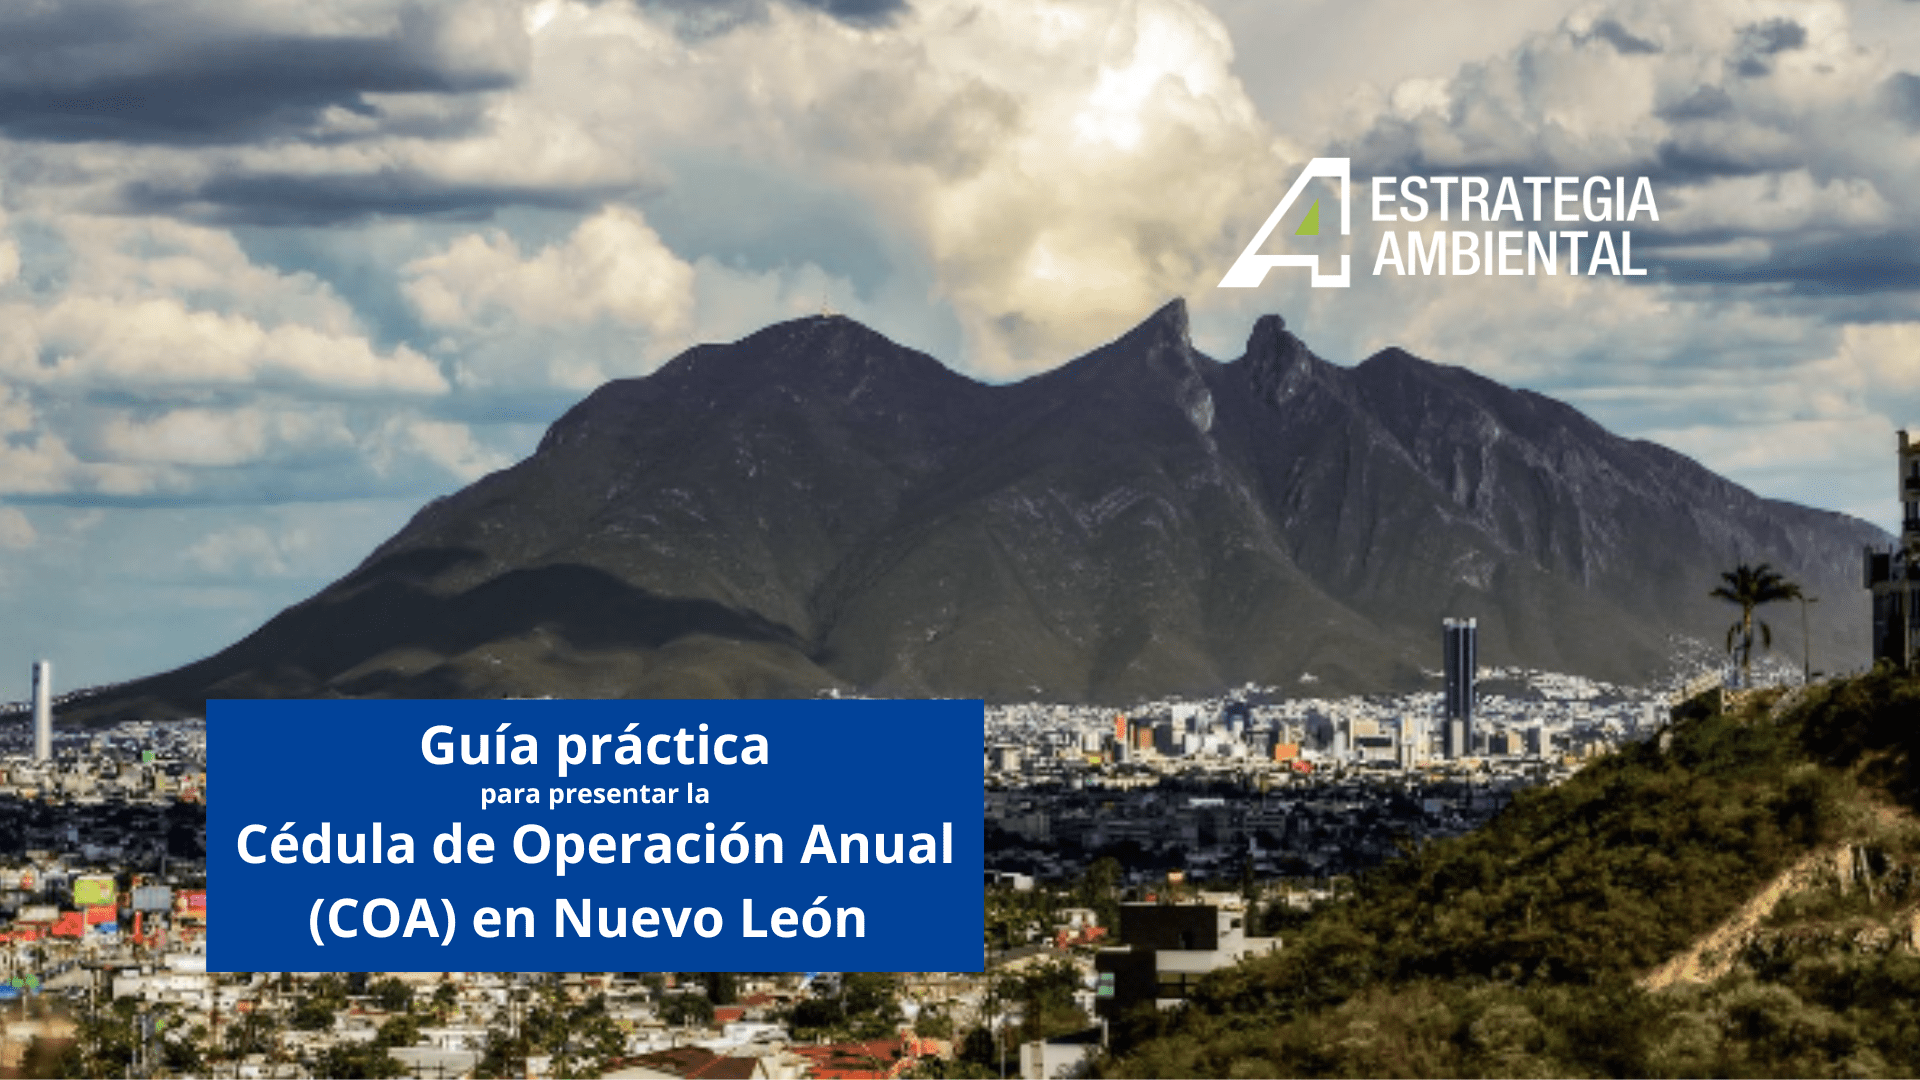 Guía práctica para presentar la Cédula de Operación Anual (COA) en Nuevo León